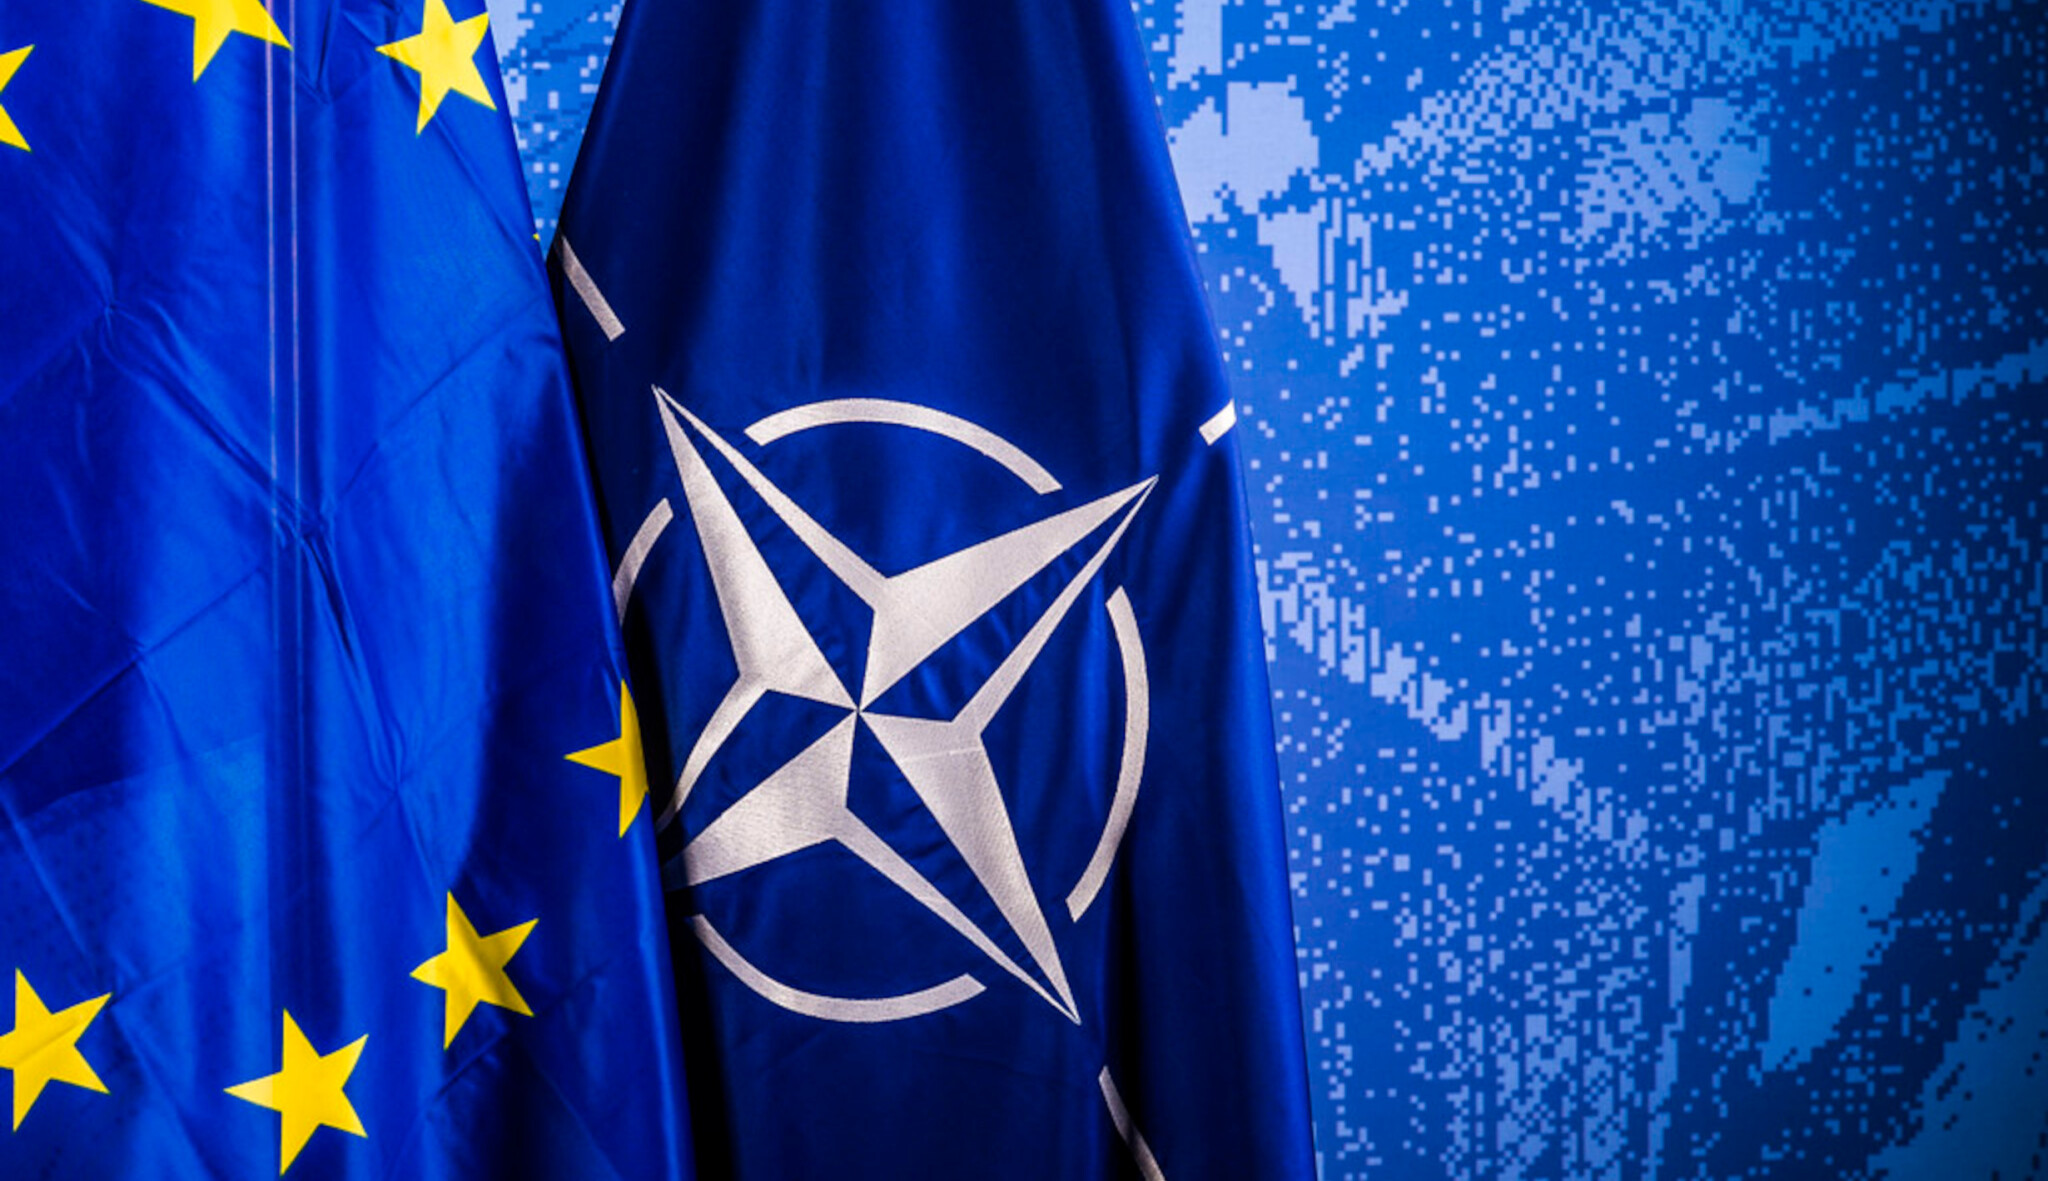 Zástupci NATO a EU podepsali společnou deklaraci o spolupráci a podpoře Ukrajiny